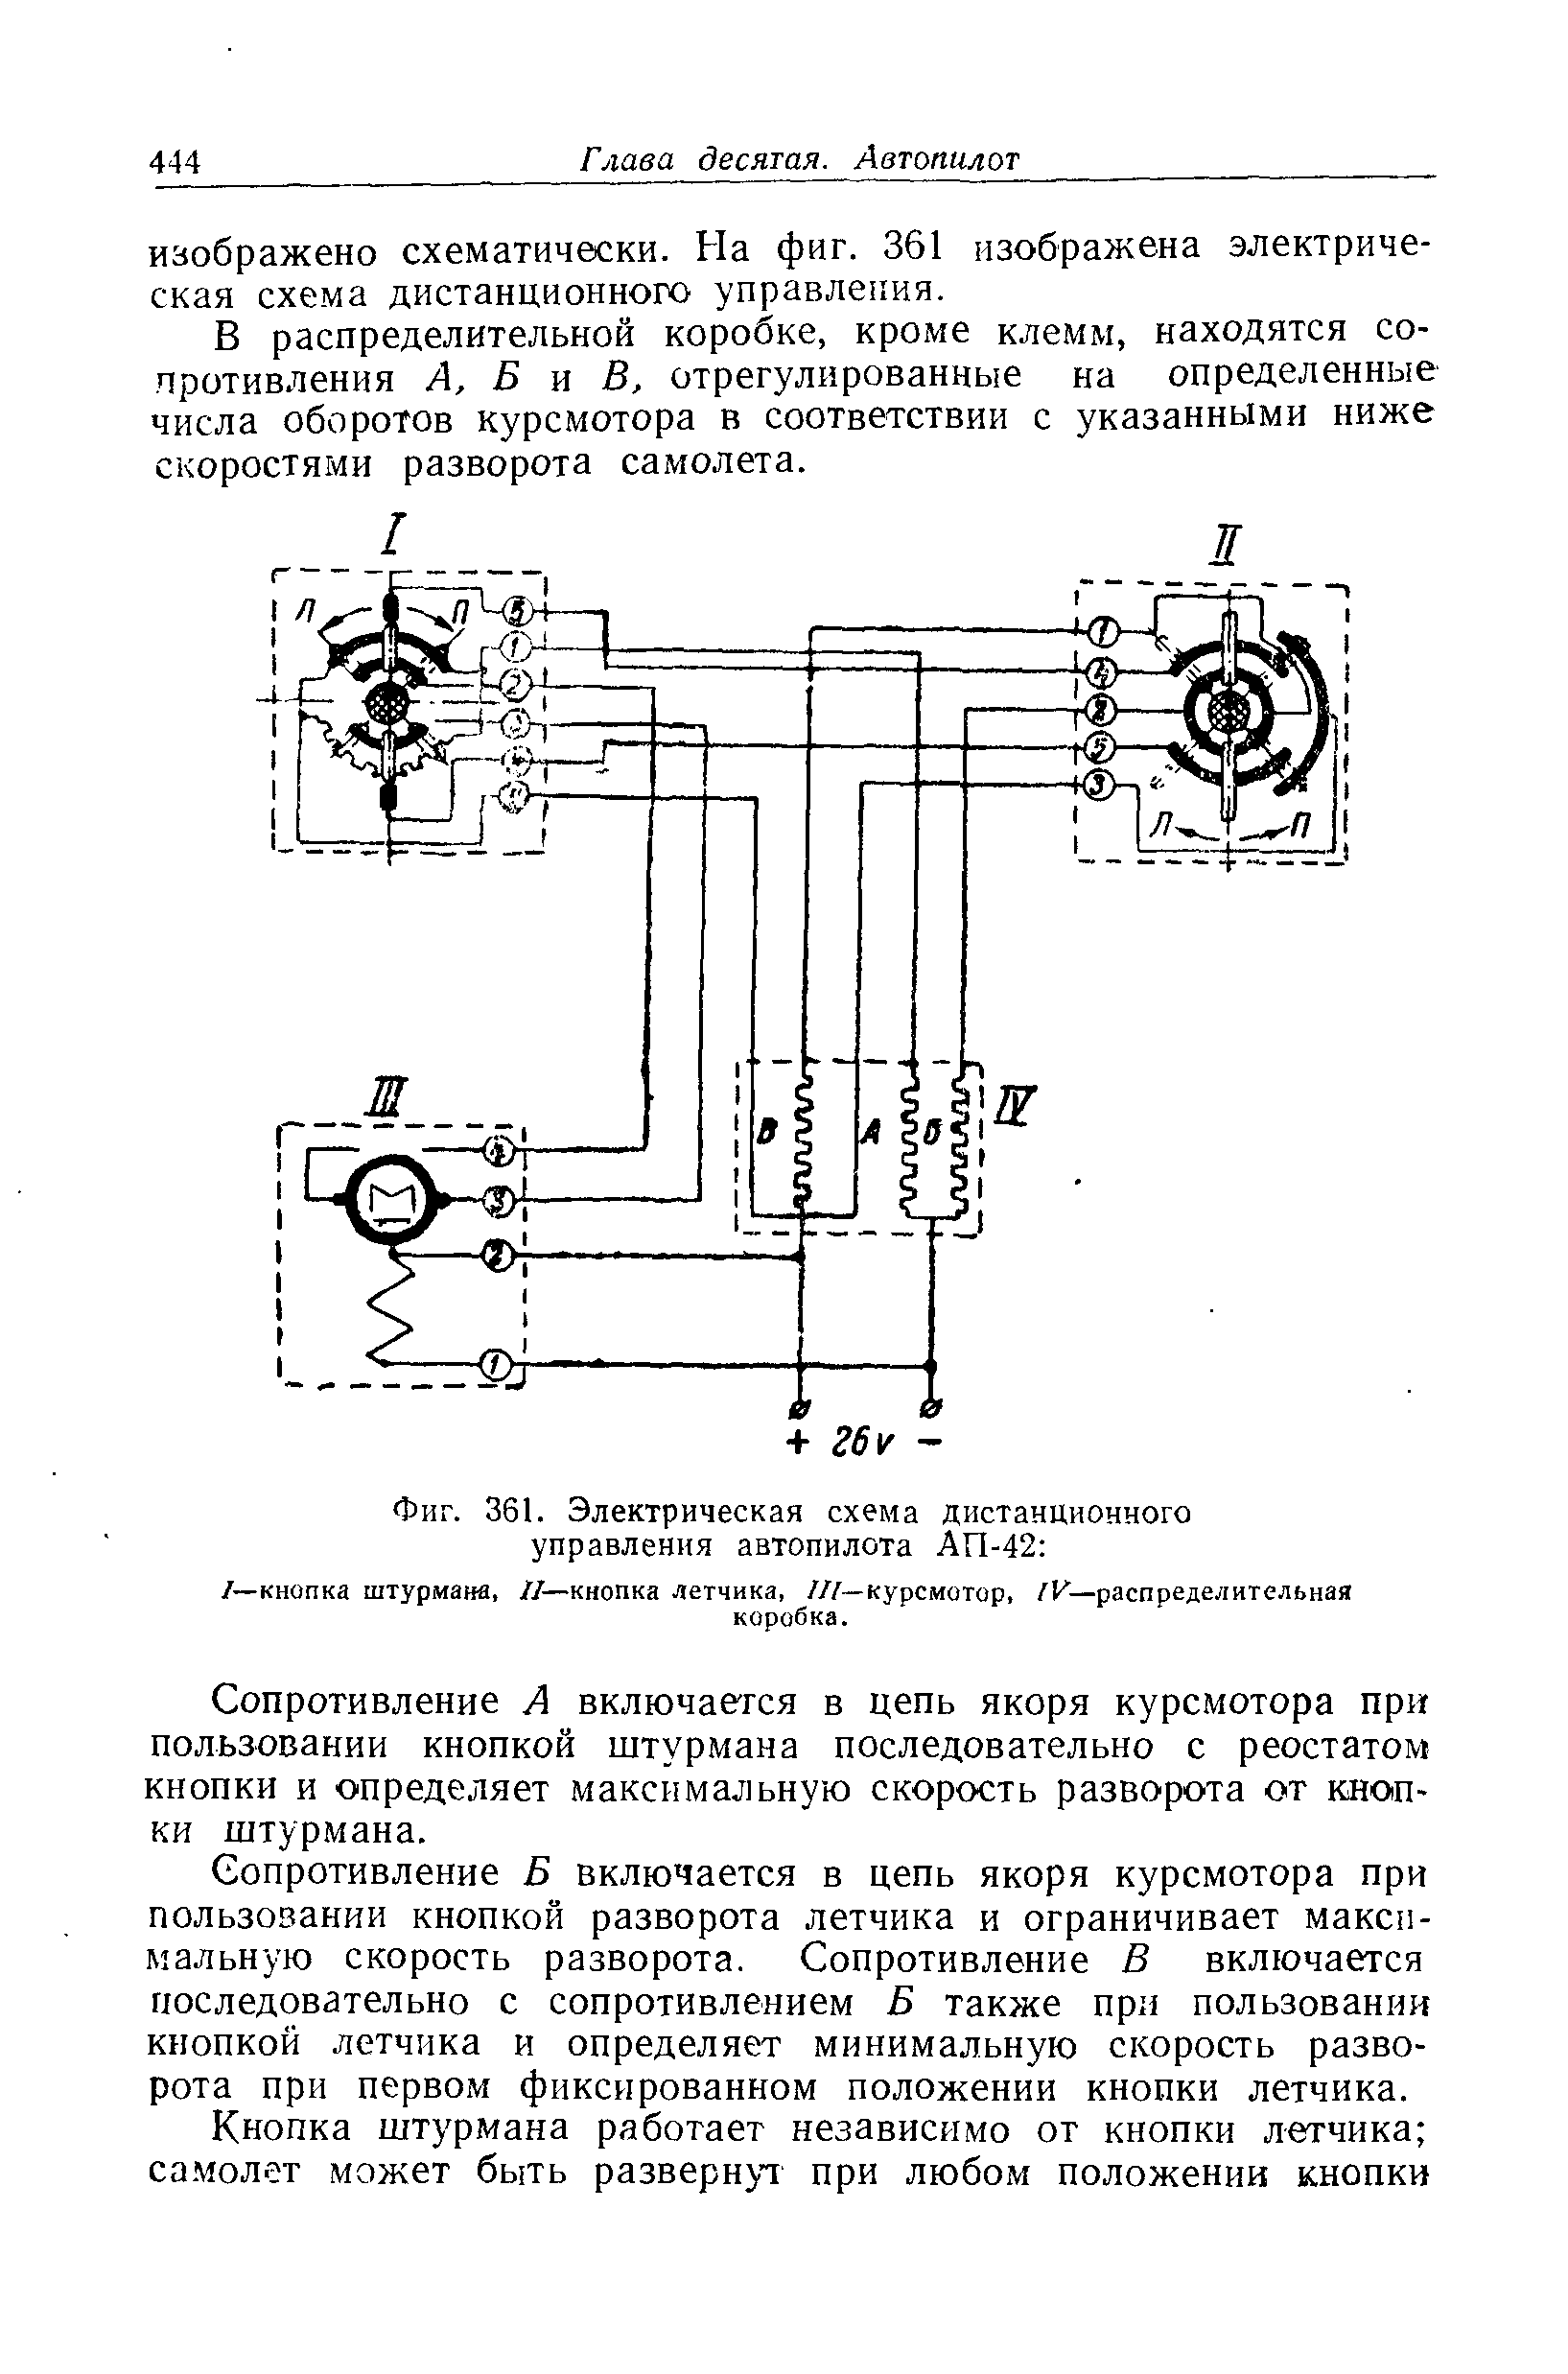 Фиг. 361. Электрическая схема дистанционного управления автопилота АП-42 
